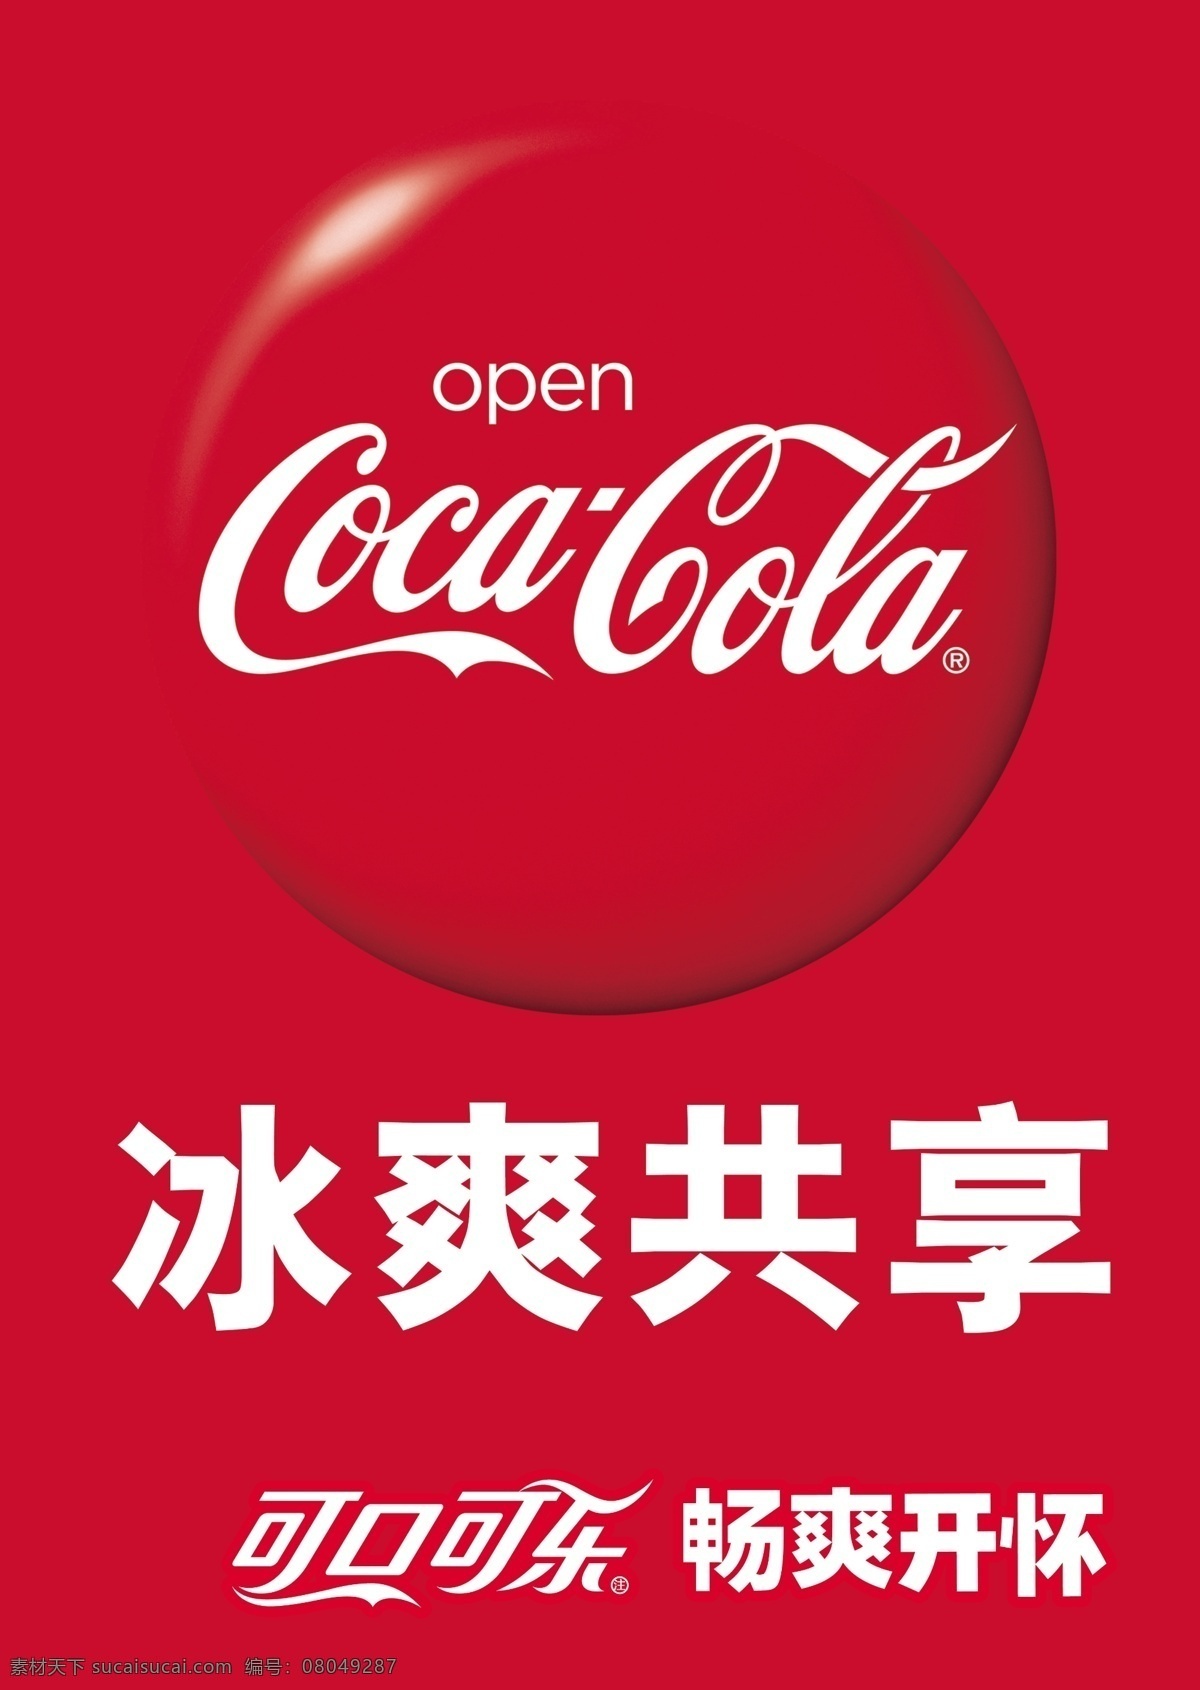 可口可乐海报 可口可乐标志 可口卡通 可口可乐 冰爽共享 可乐 广告设计模板 源文件